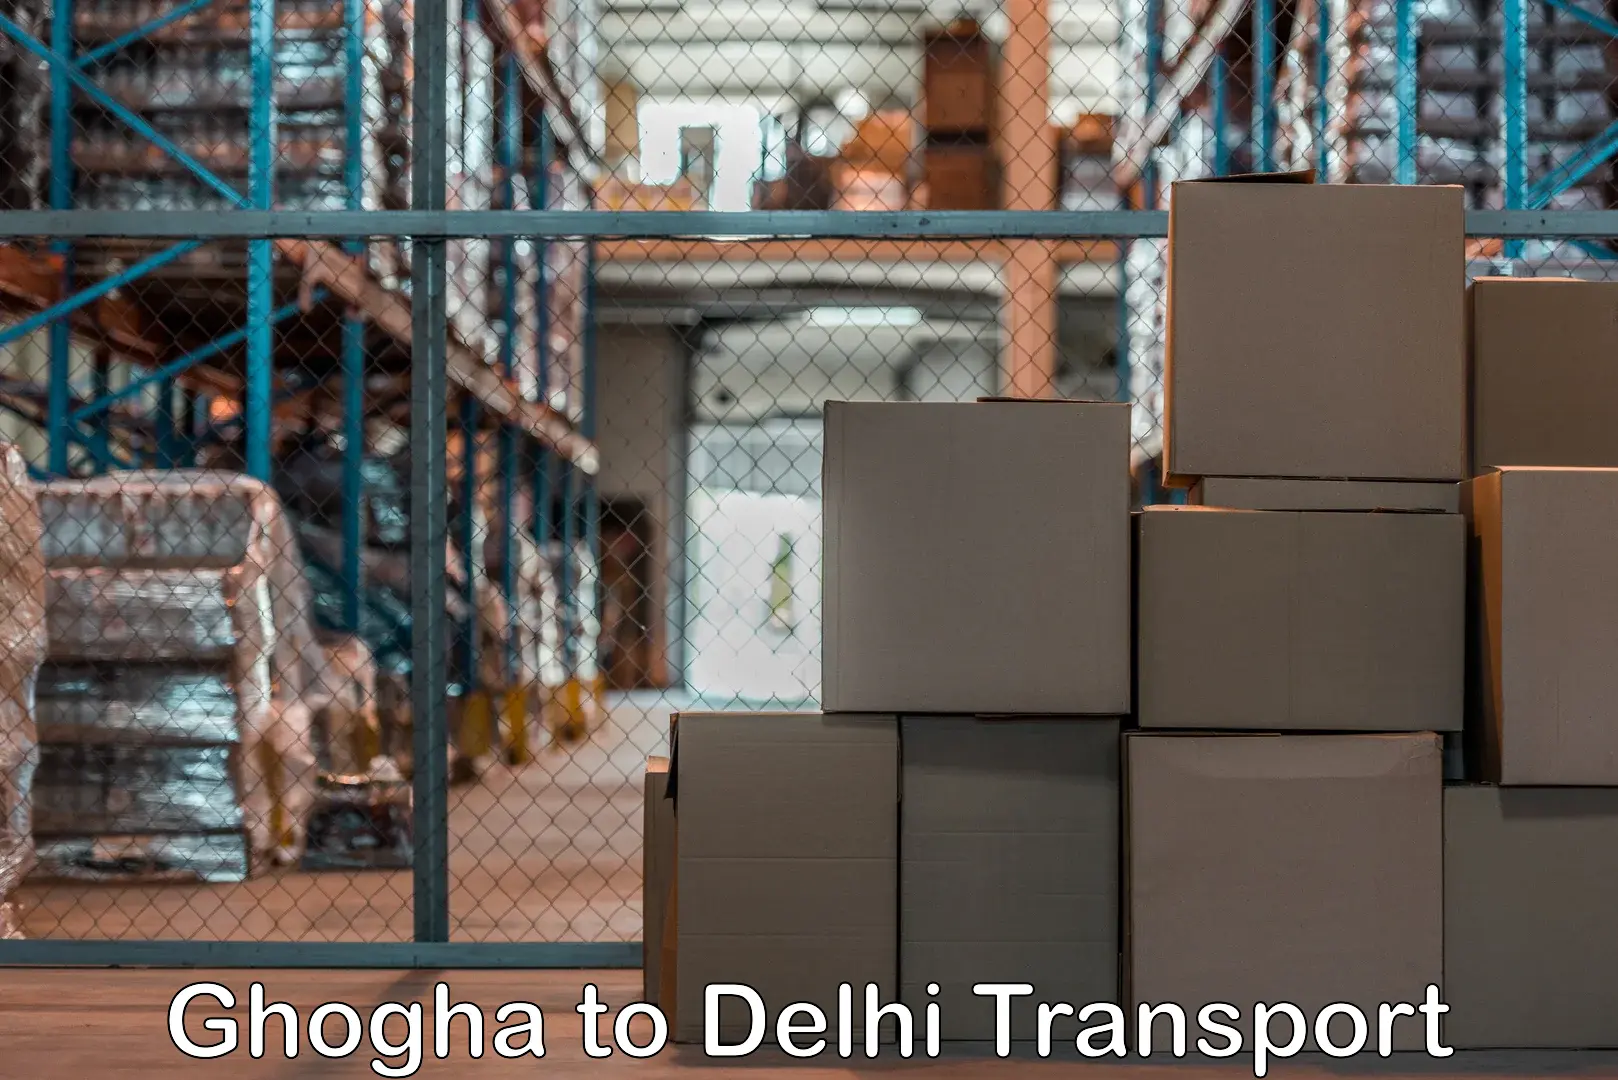 Door to door transport services Ghogha to East Delhi